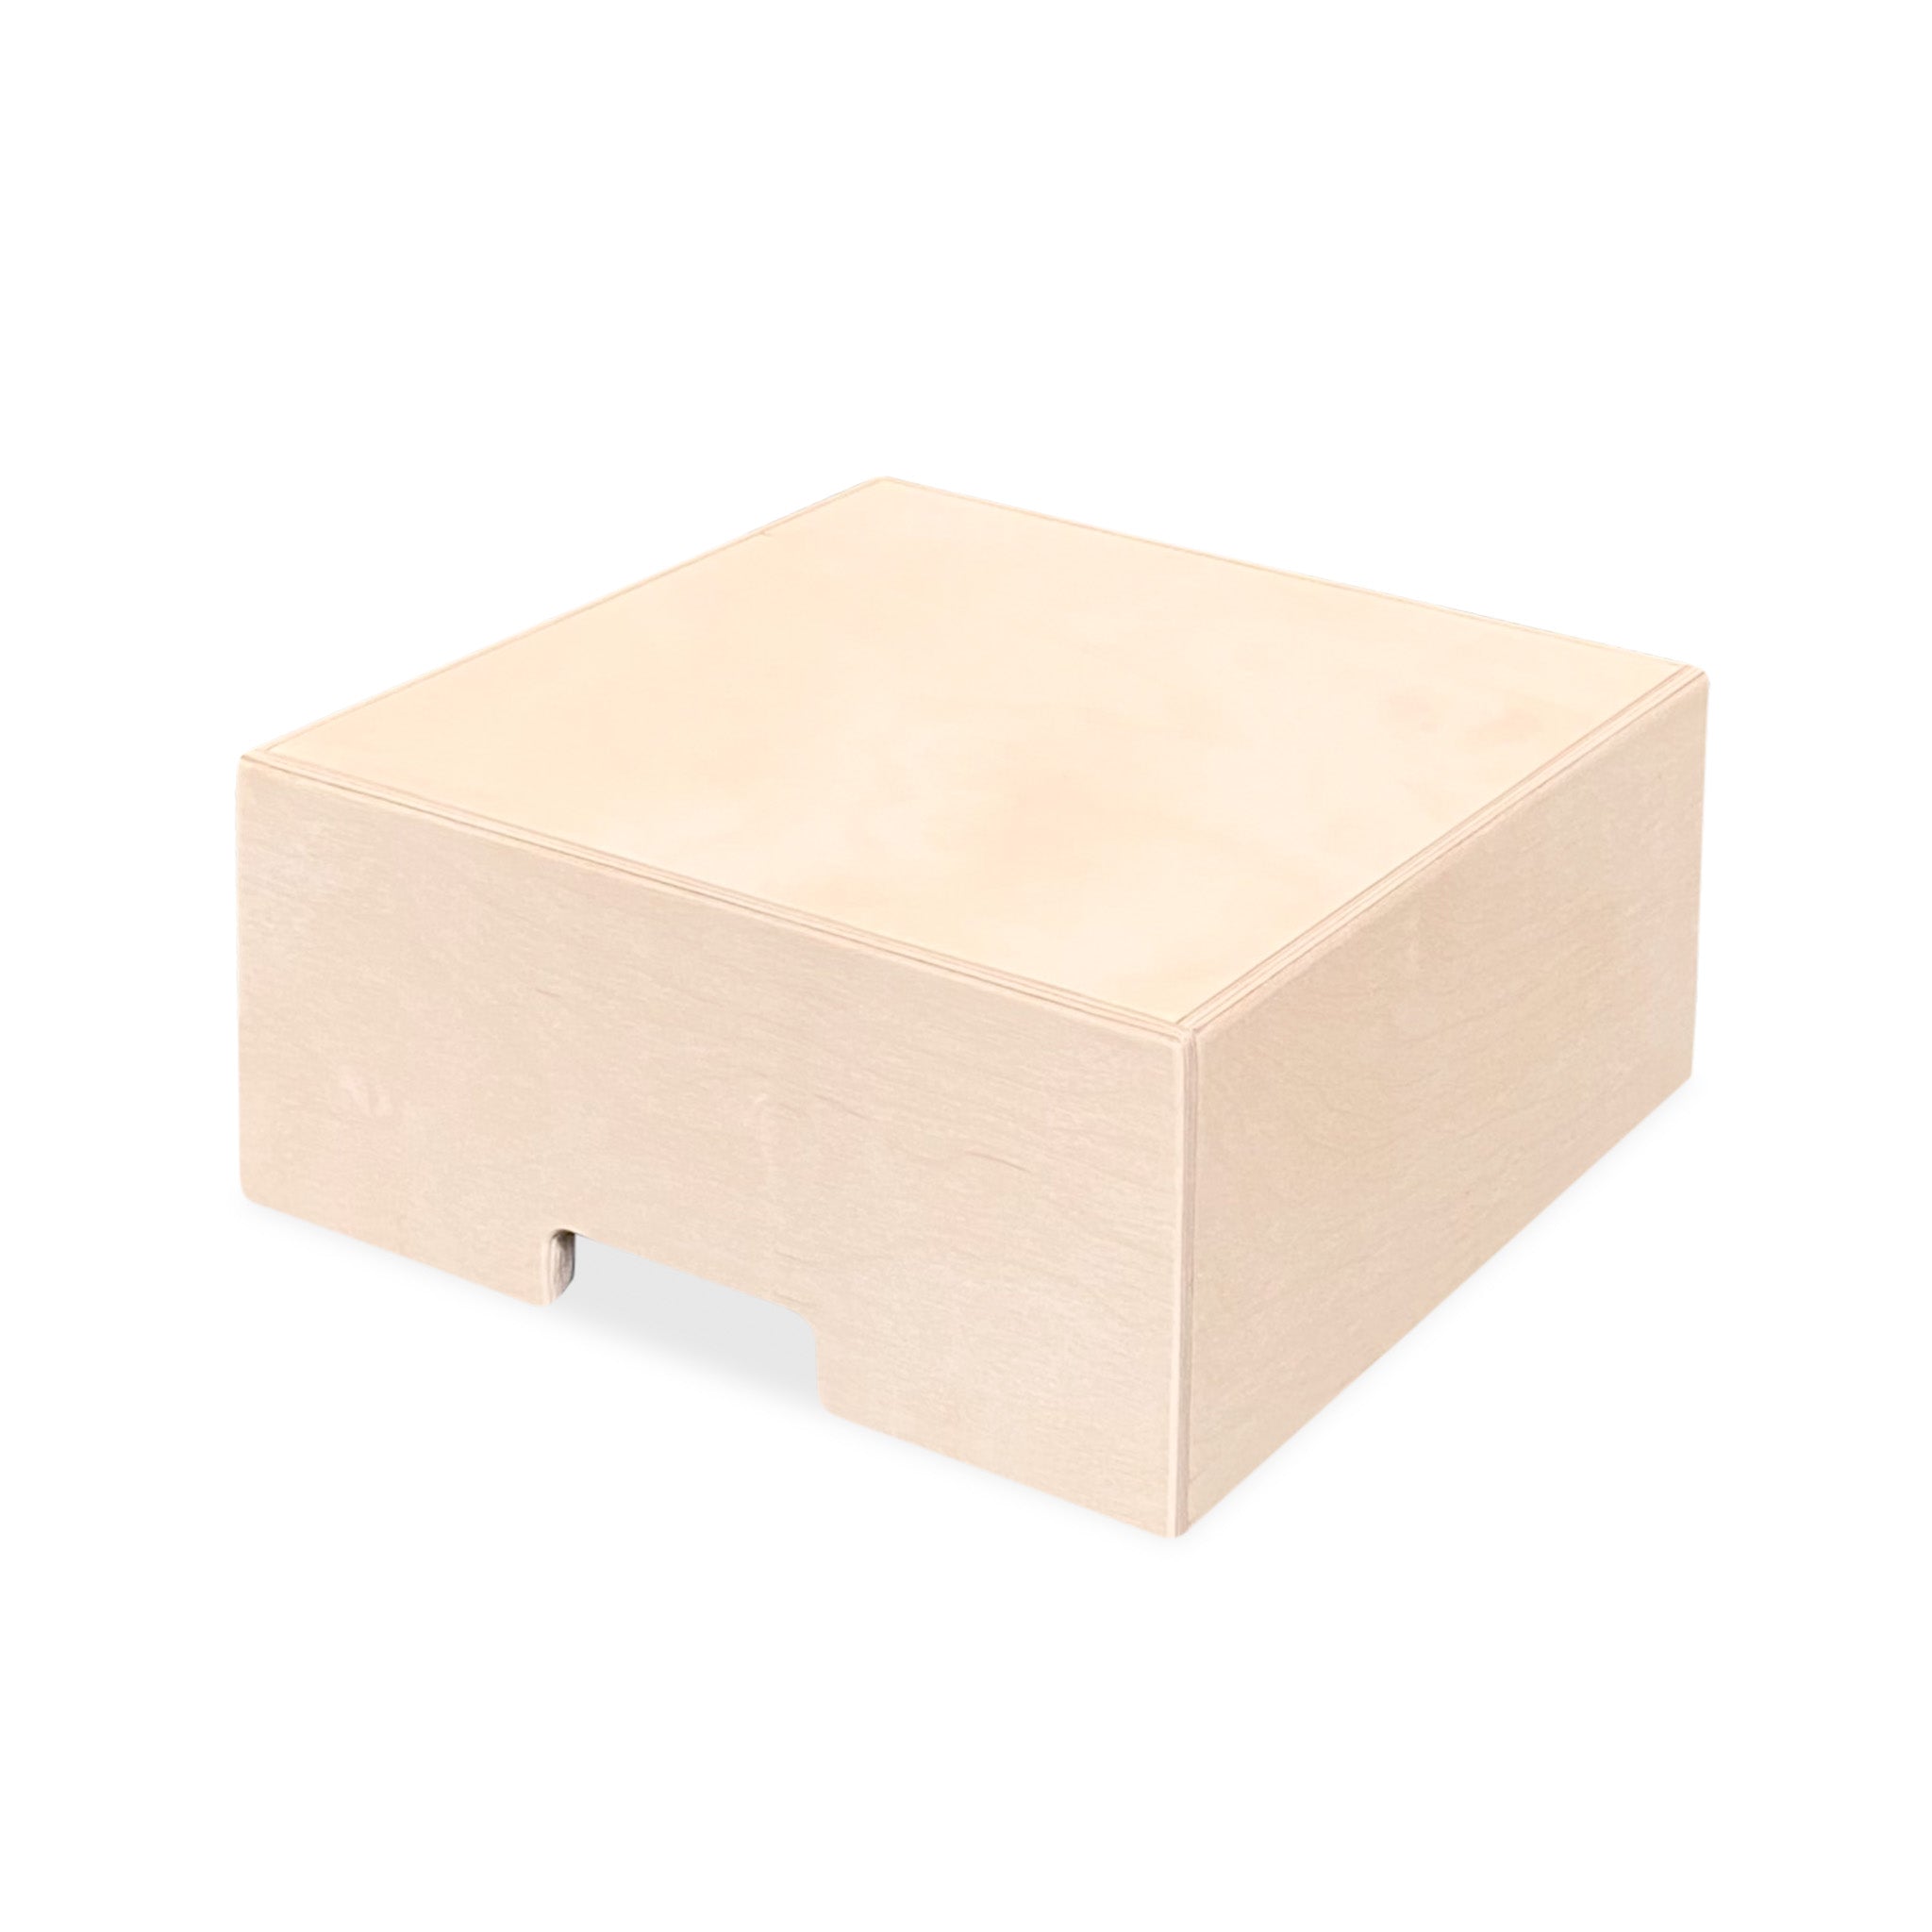 Montessori coffres de rangement pour la chambre d'enfants | Caisses en bois empilables comme marchepied - naturel - toddie.fr